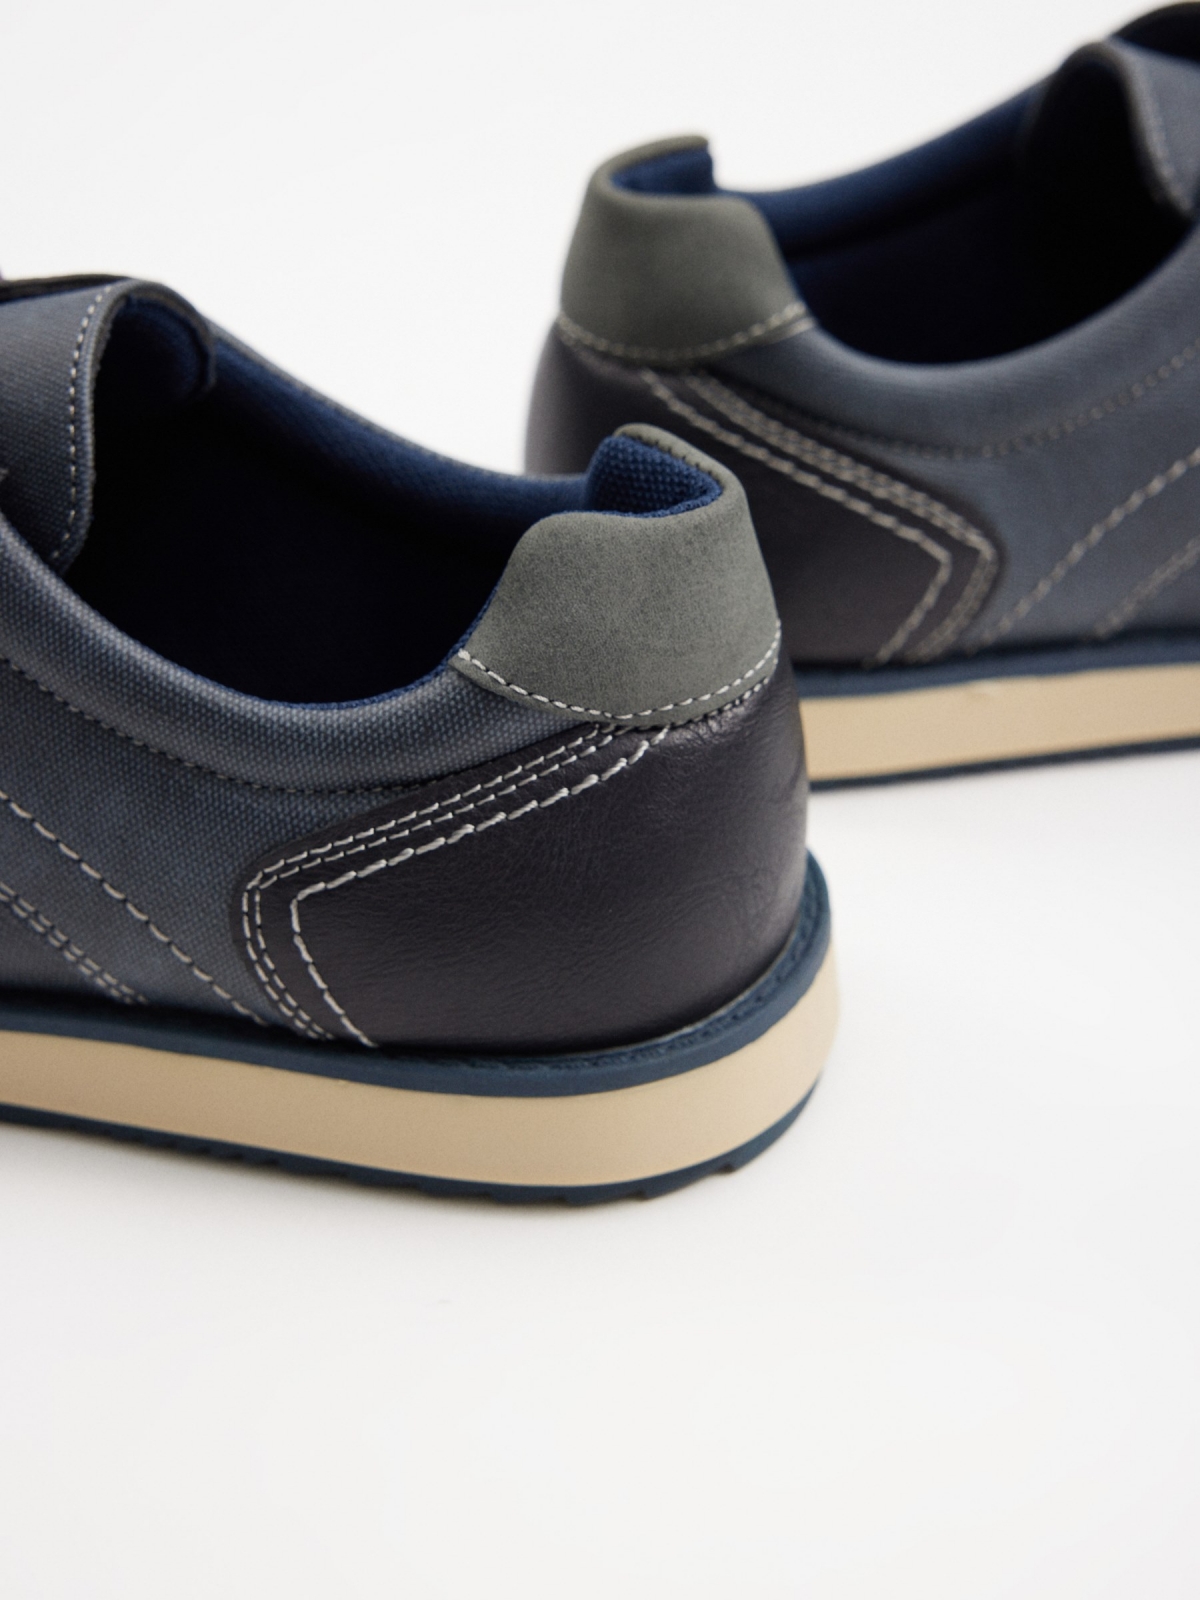 Clássico sapato combinado de blucher azul marinho vista detalhe